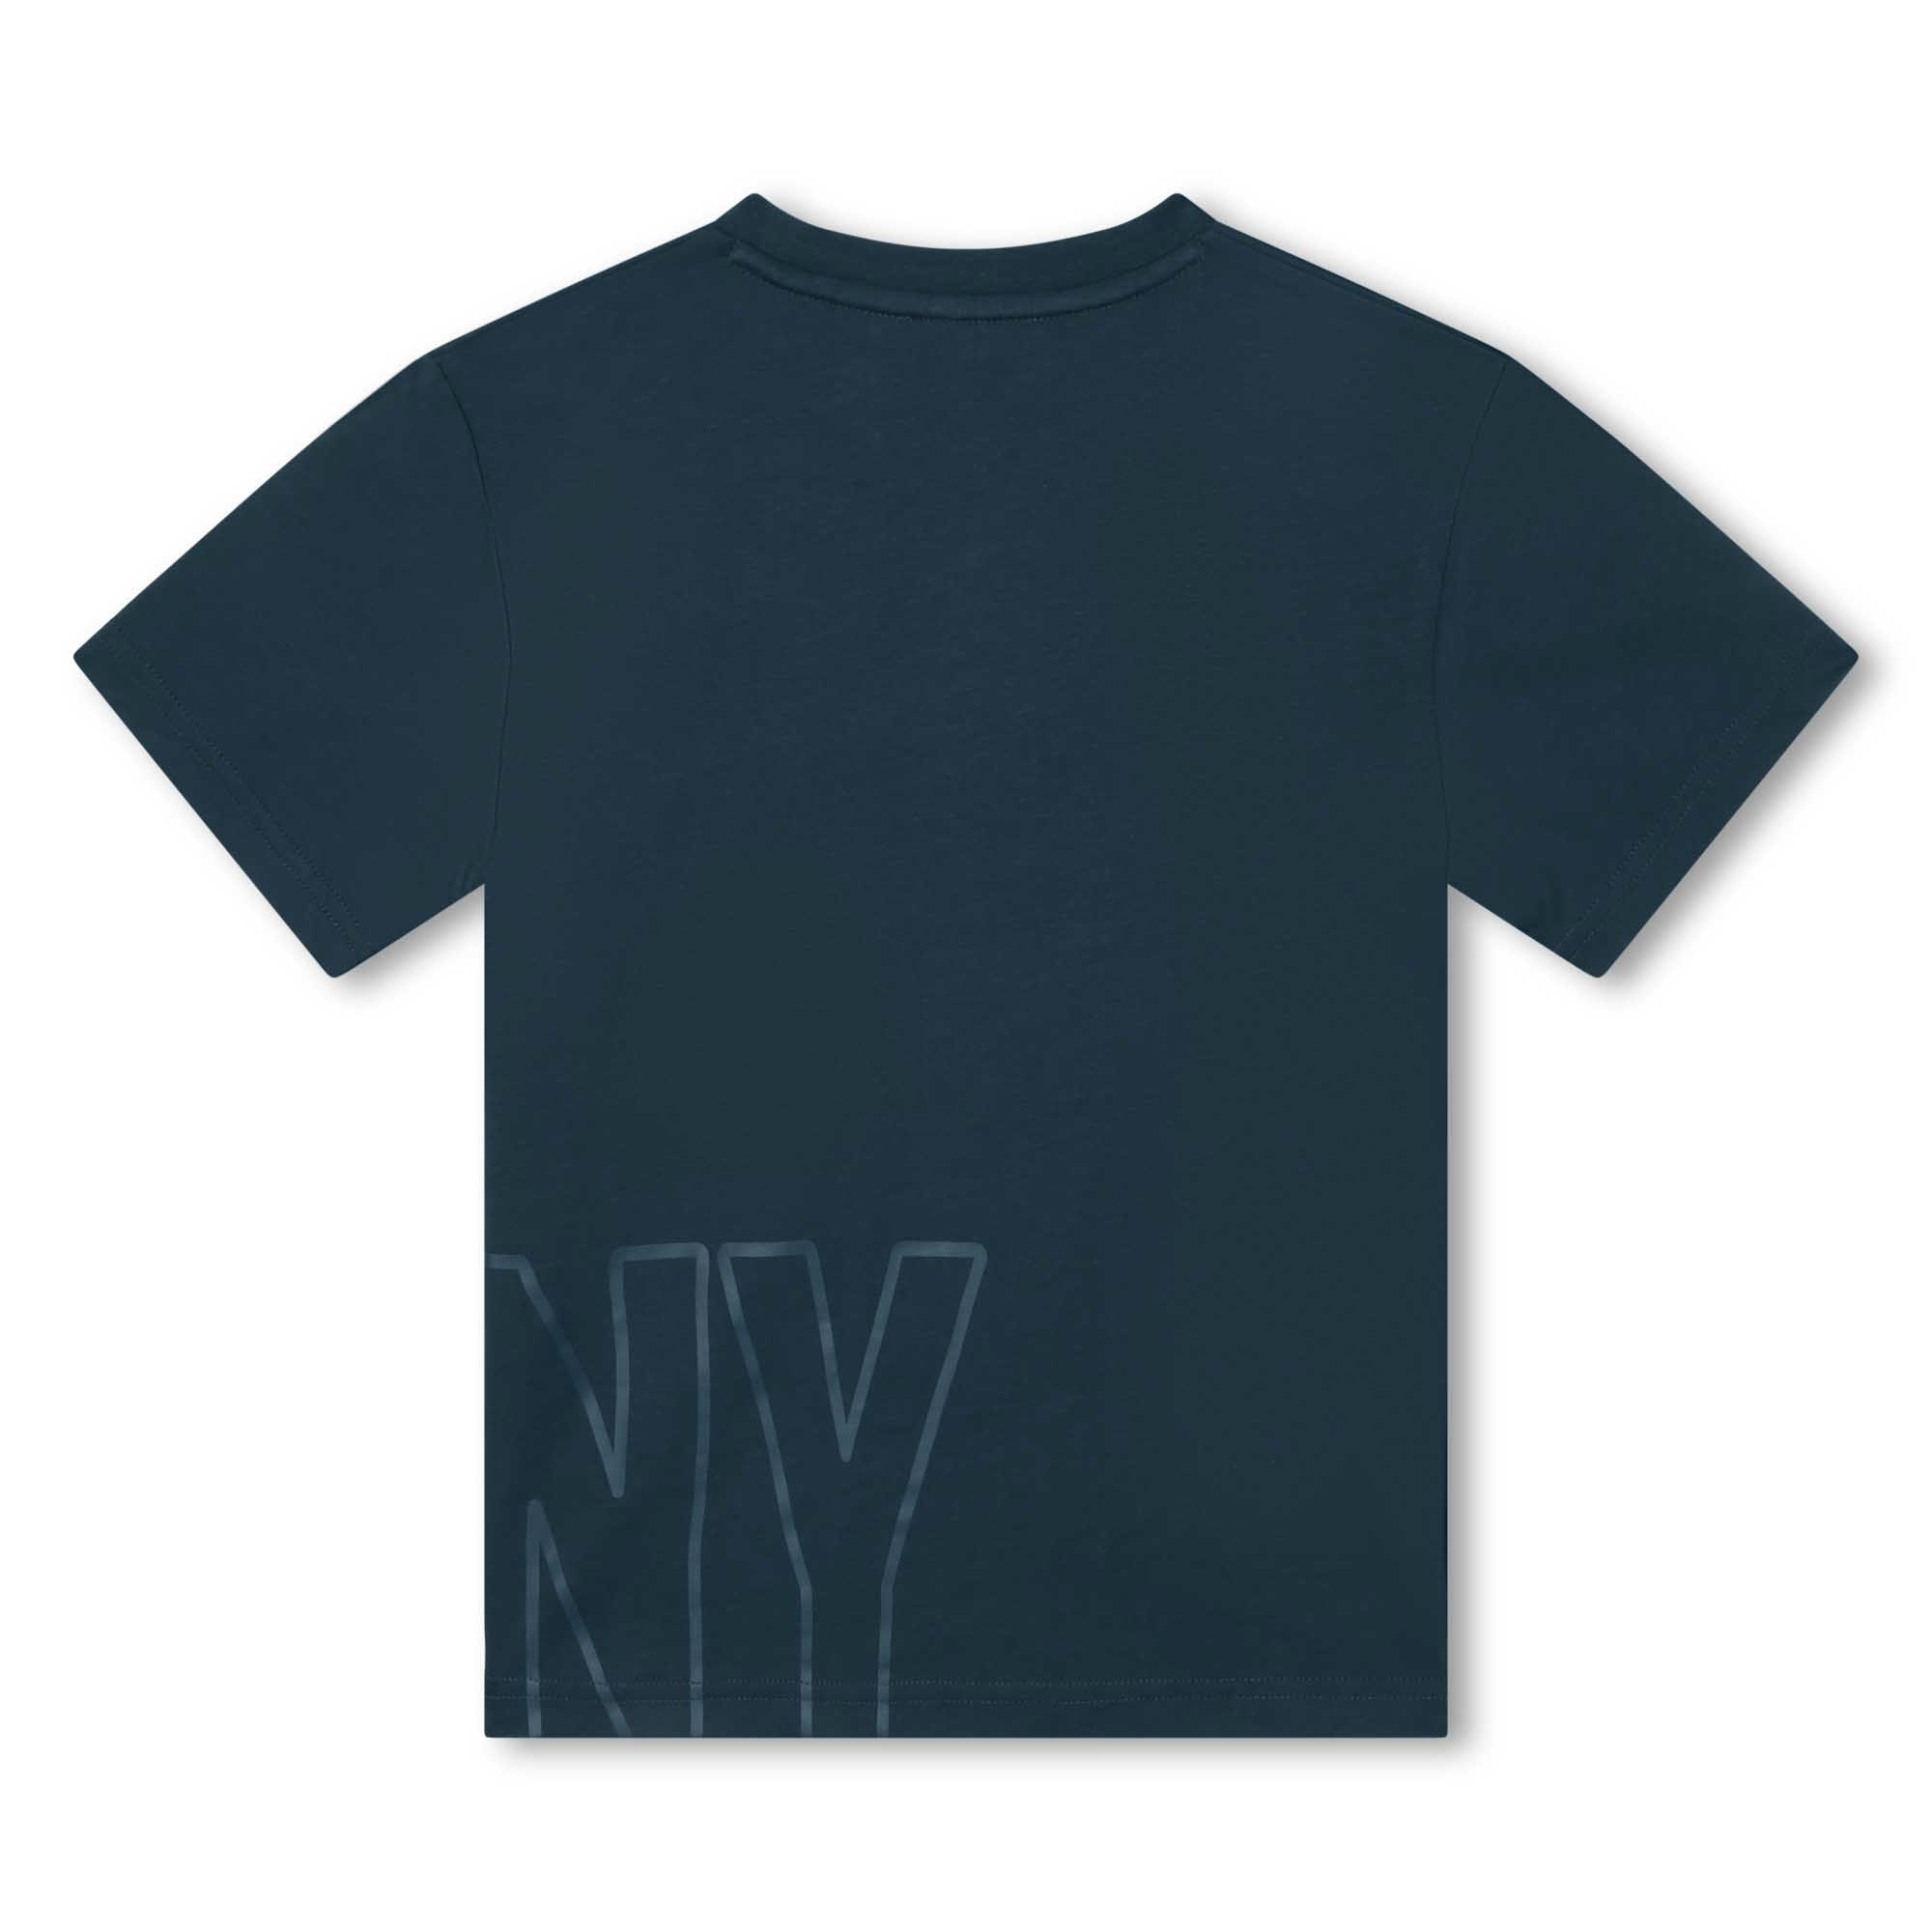 T-shirt a maniche corte DKNY Per UNISEX